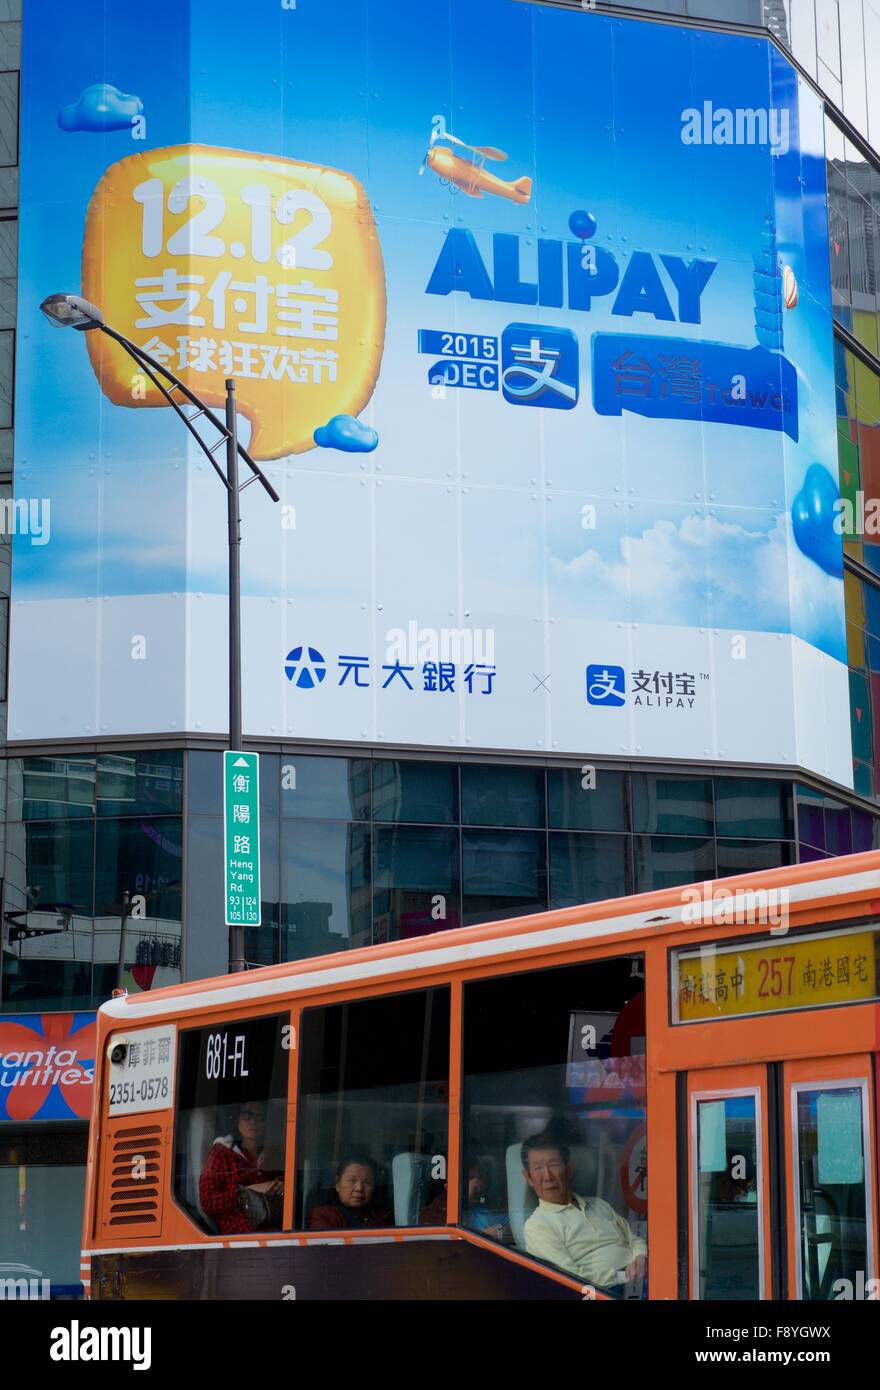 Taipeh. 12. Dezember 2015. Ein Plakat zeigt Alipay Zahlung Werbung bei Hengyang Road in Taipei, Taiwan in Südost-China, 12. Dezember 2015. Nach Alipay, der Online-Zahlungsdienstleister der Alibaba Group, haben 3.500 Wirtschaftsunternehmen in Taiwan Alipay Zahlung akzeptiert, da die Förderung am 1. Dezember begann. © Jiang Kehong/Xinhua/Alamy Live-Nachrichten Stockfoto